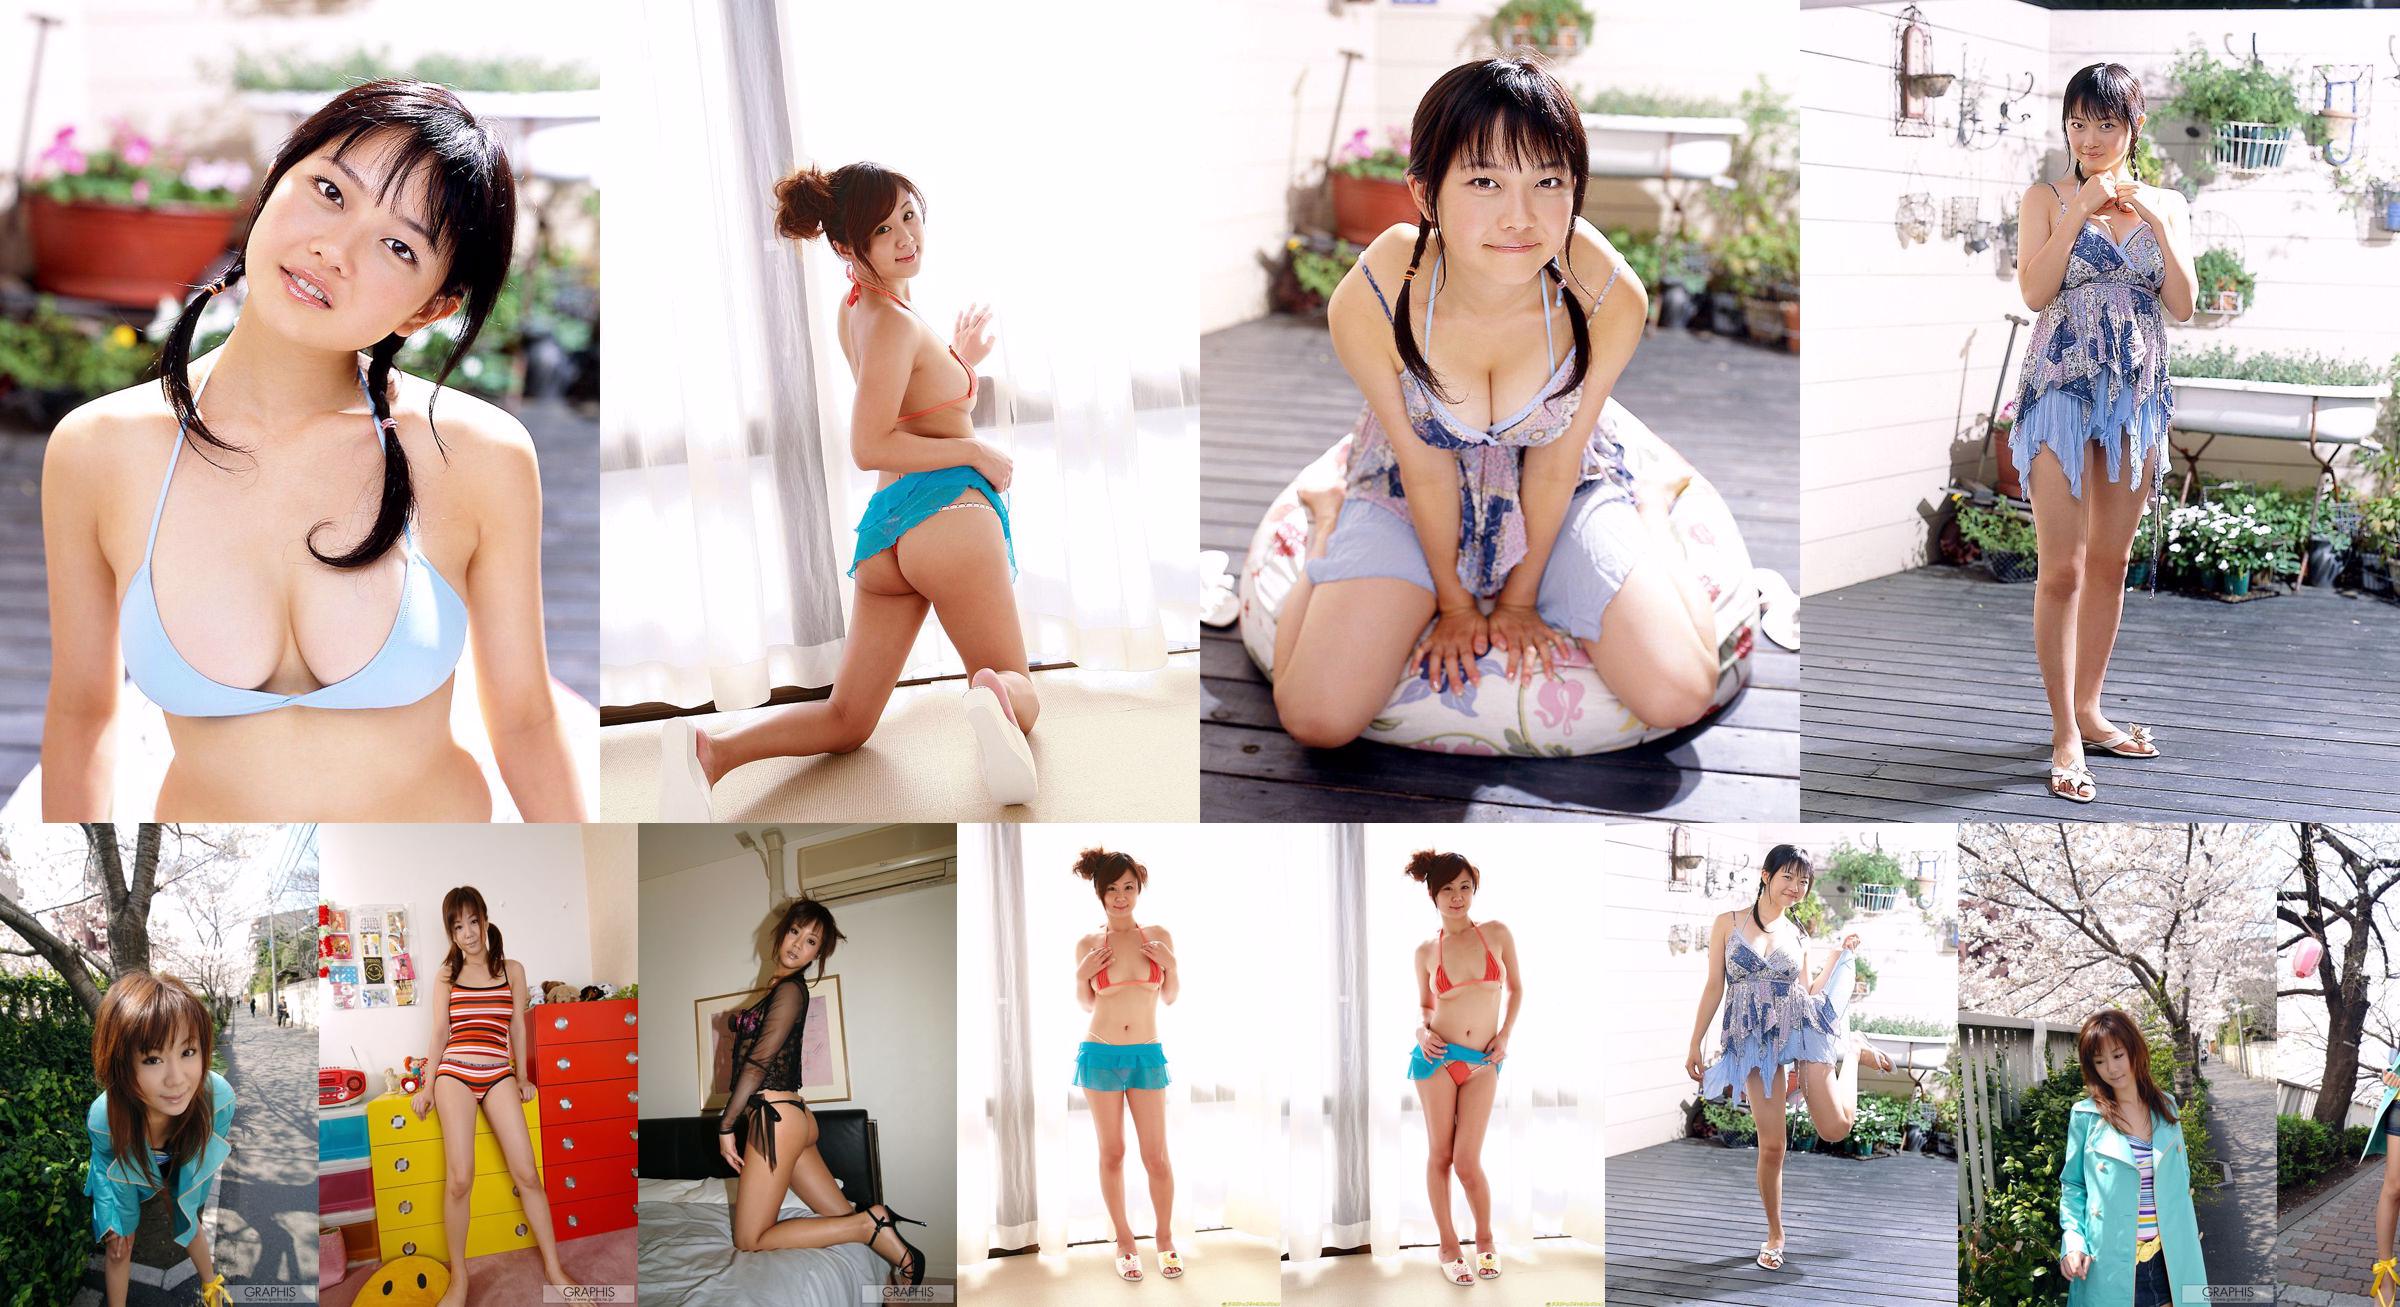 Maki Hoshino / Maki Hoshino "Juicy" [Graphis] Gals No.7d69f0 Halaman 1